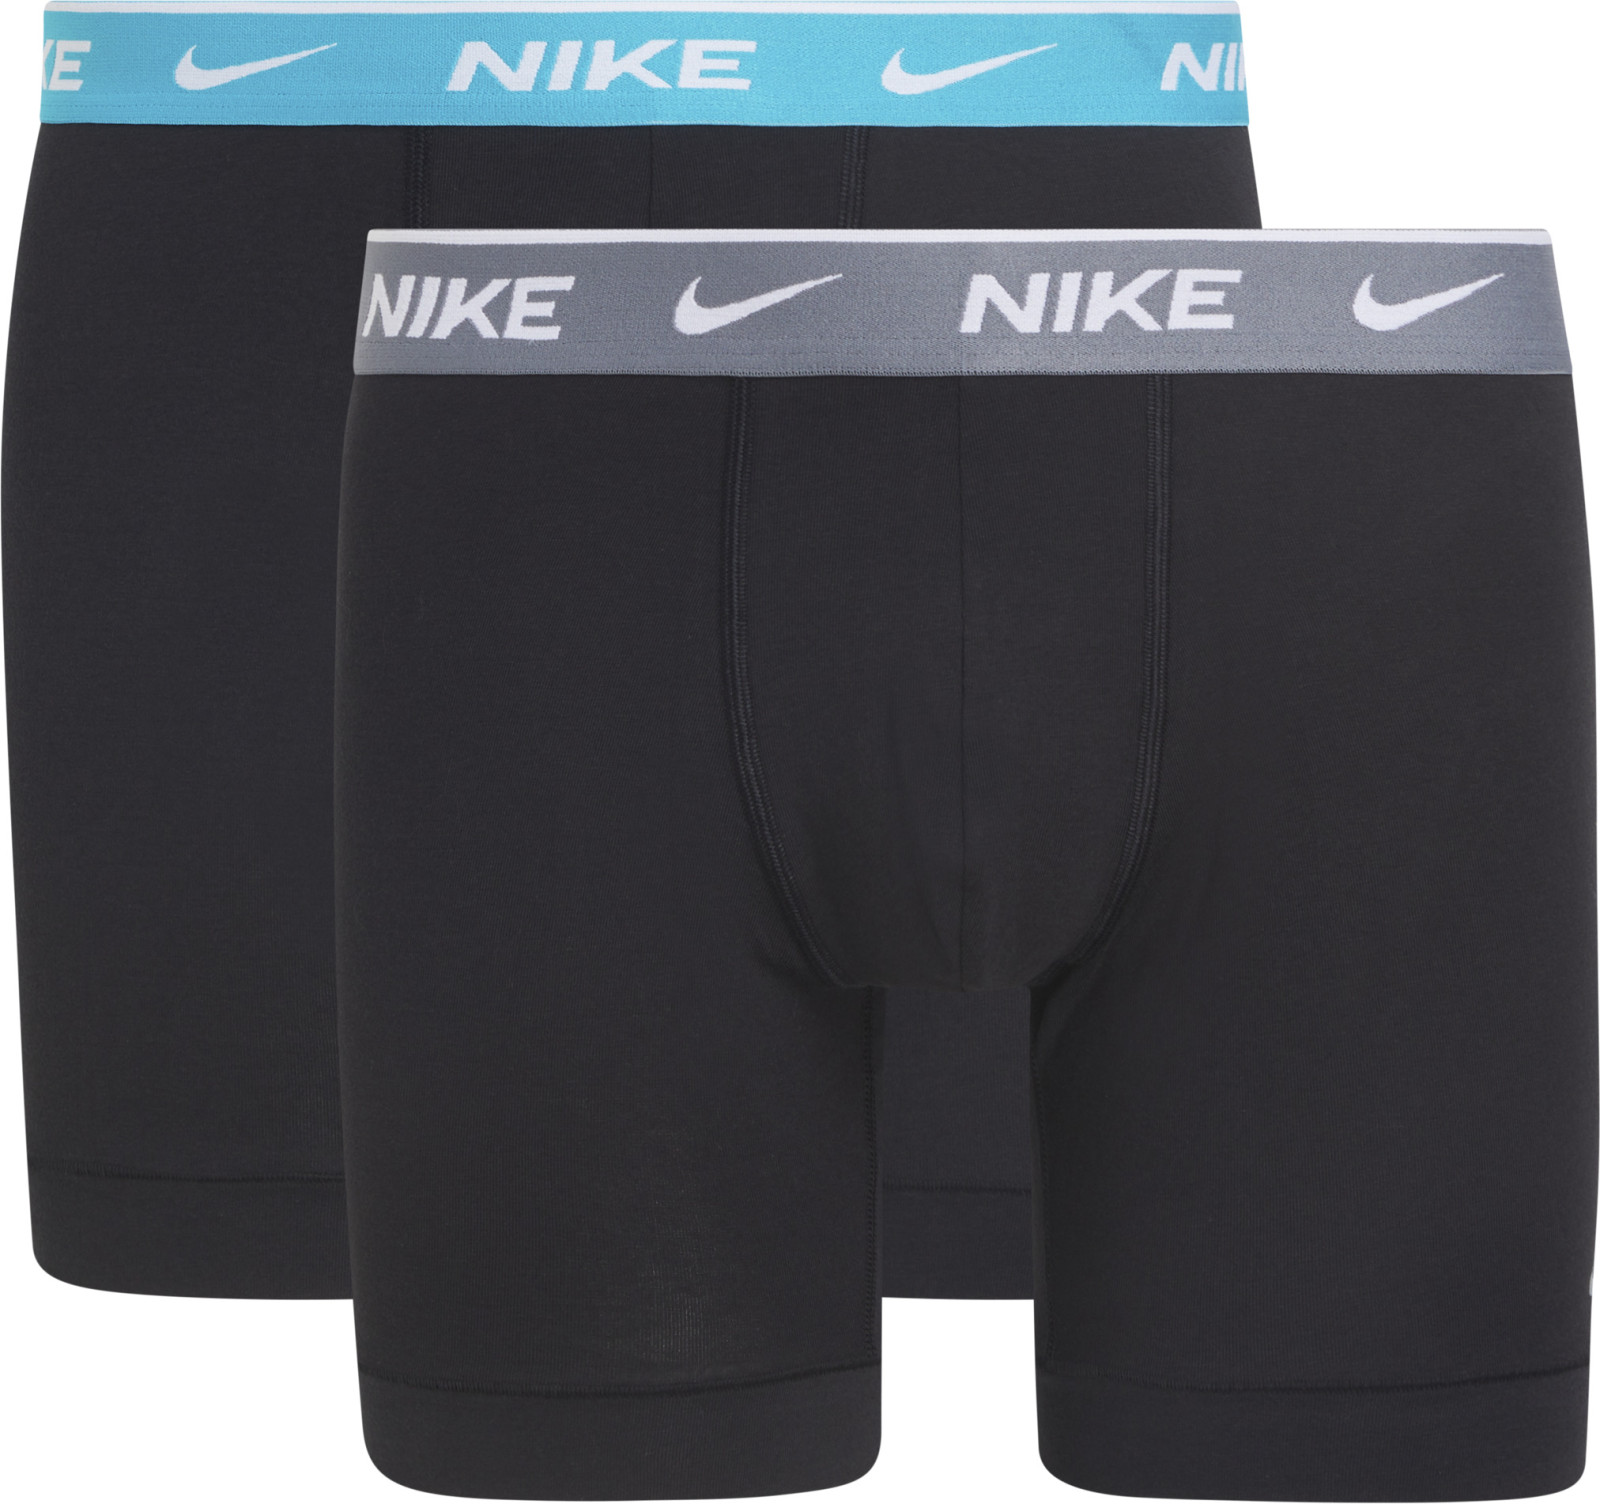 Levně Nike boxer brief 2pk-everyday cotton stretch 2pk s